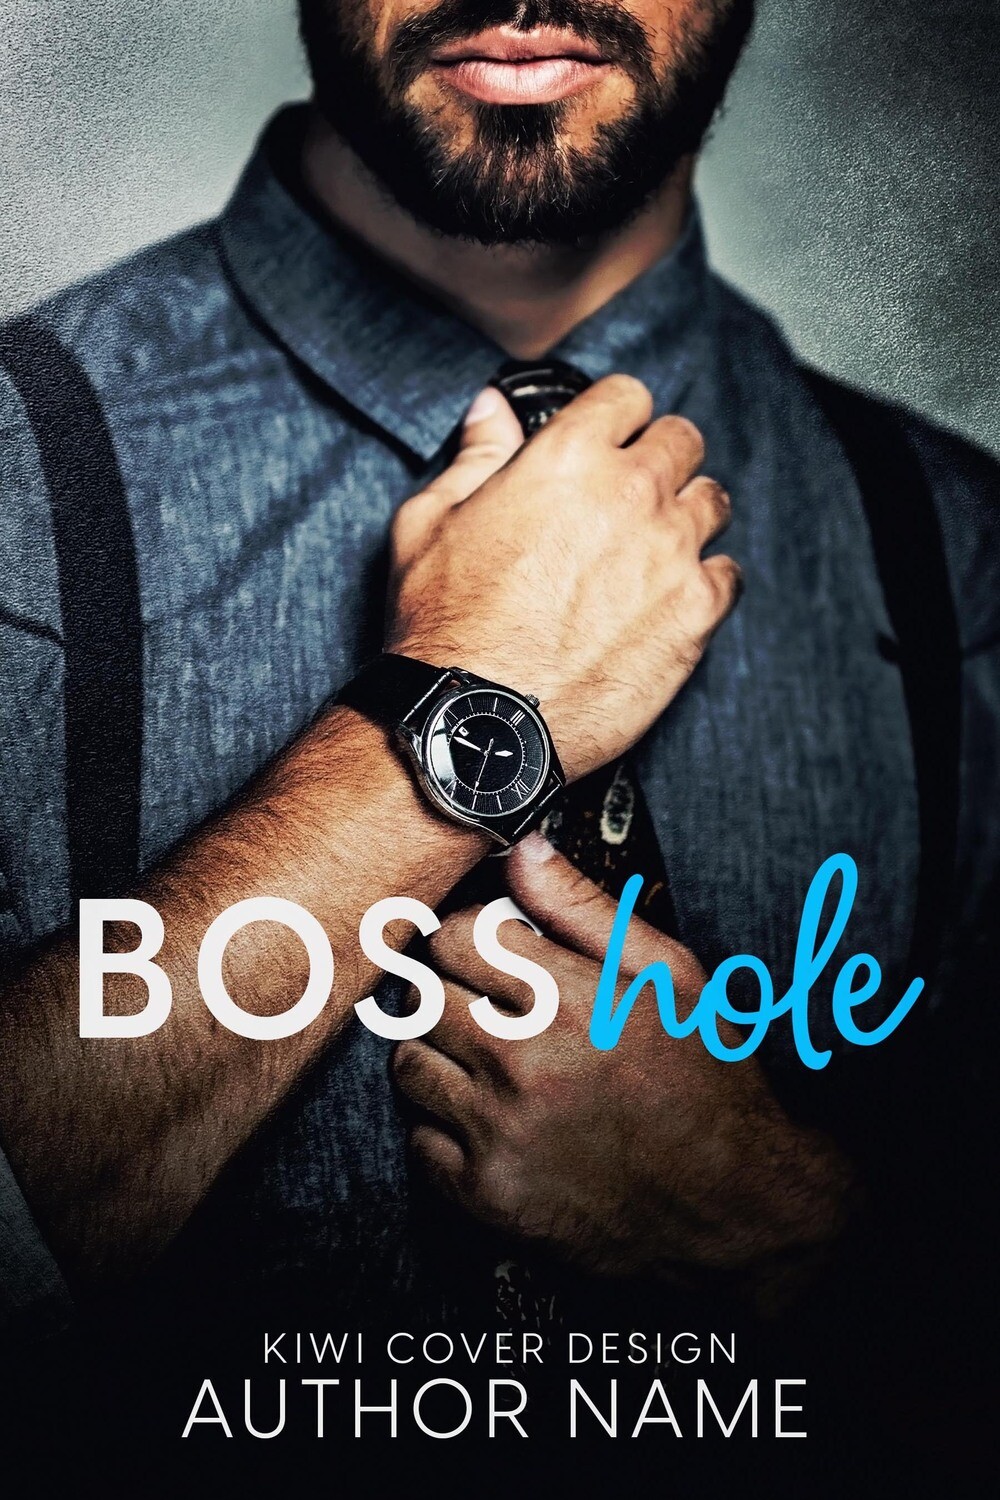 Bosshole